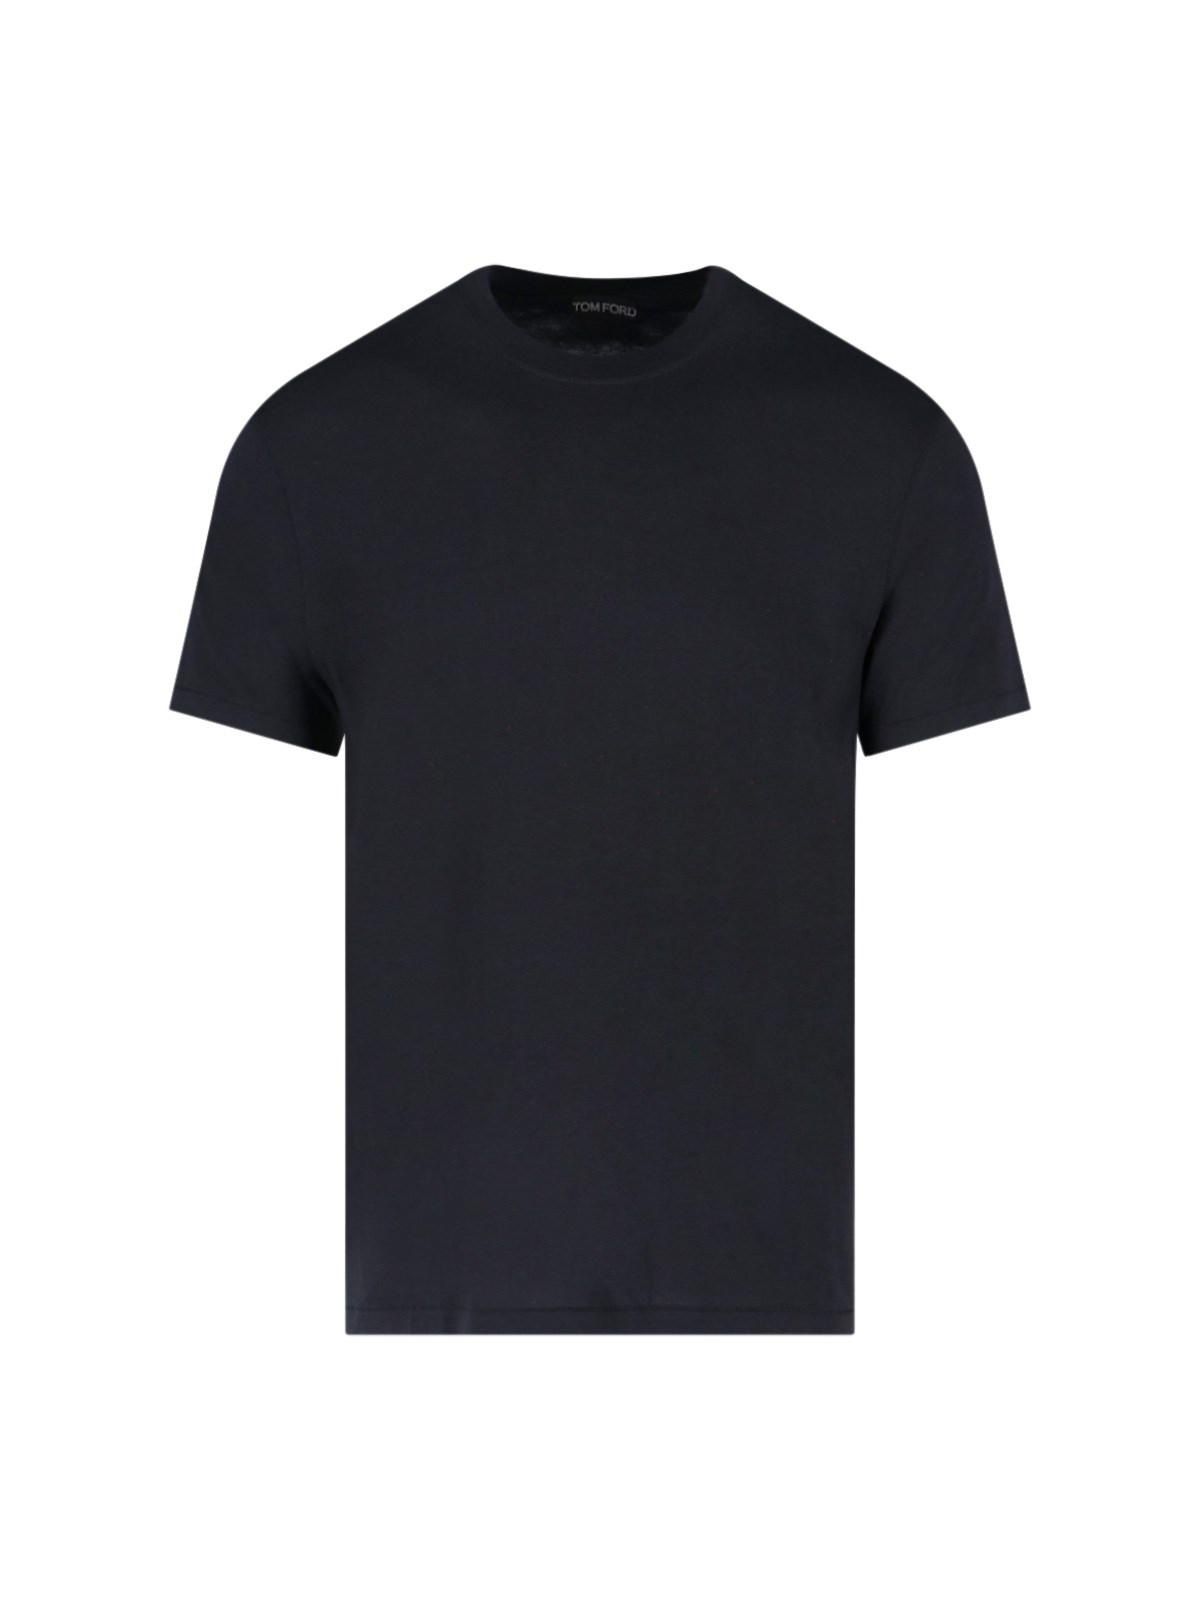 Tom Ford Basic T-shirt In Black  